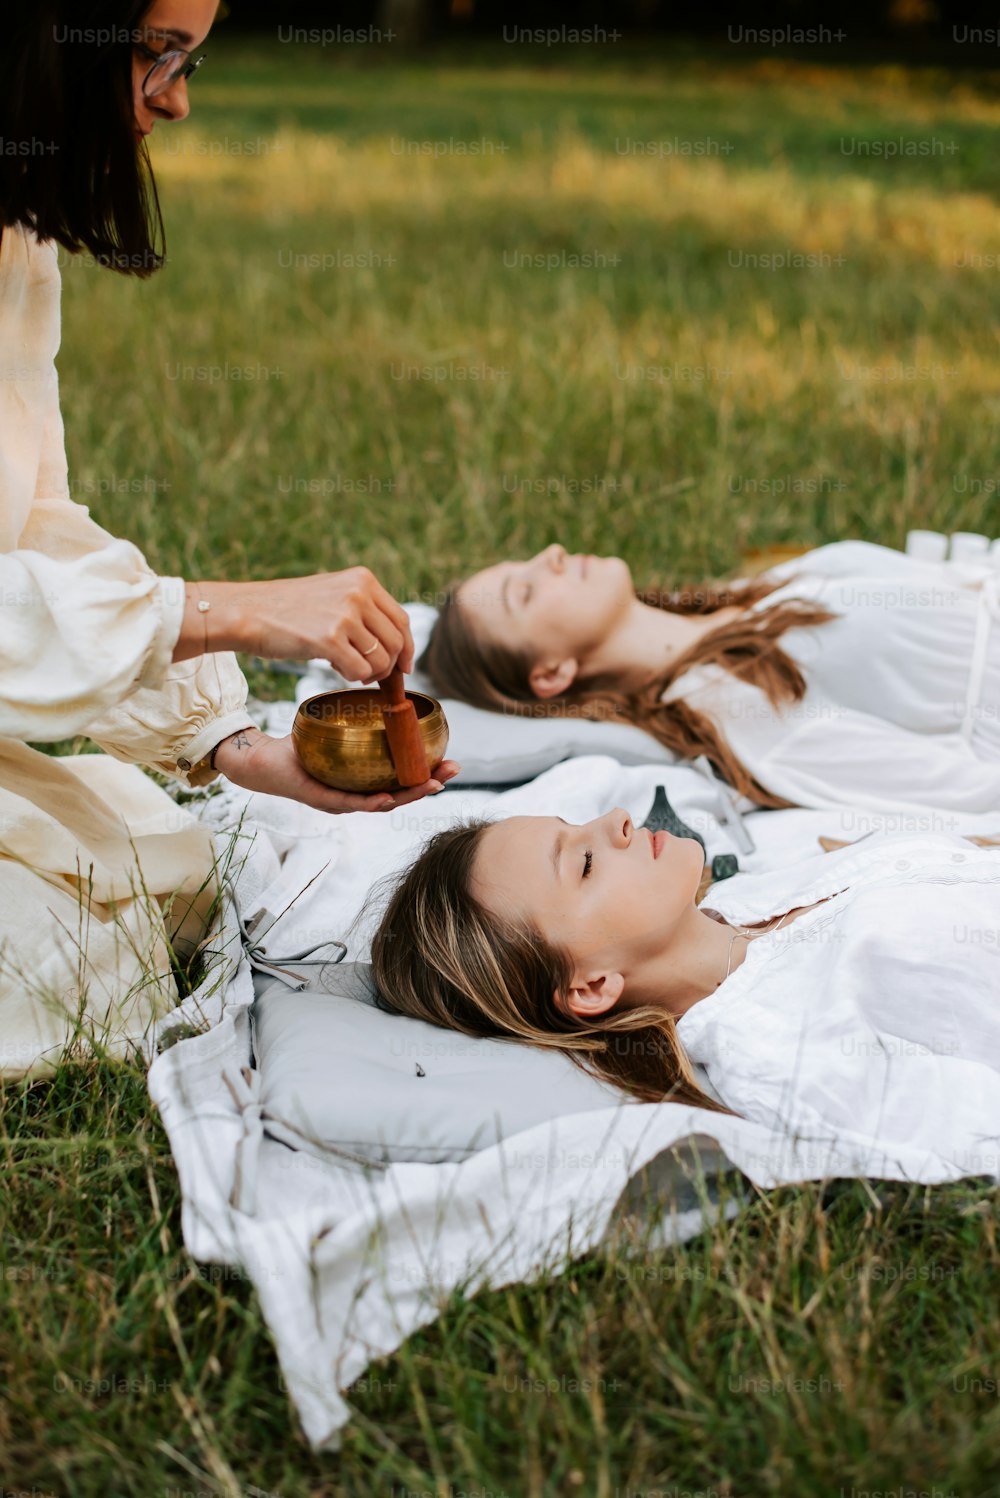 풀밭에 담요를 깔고 누워 있는 두 여자